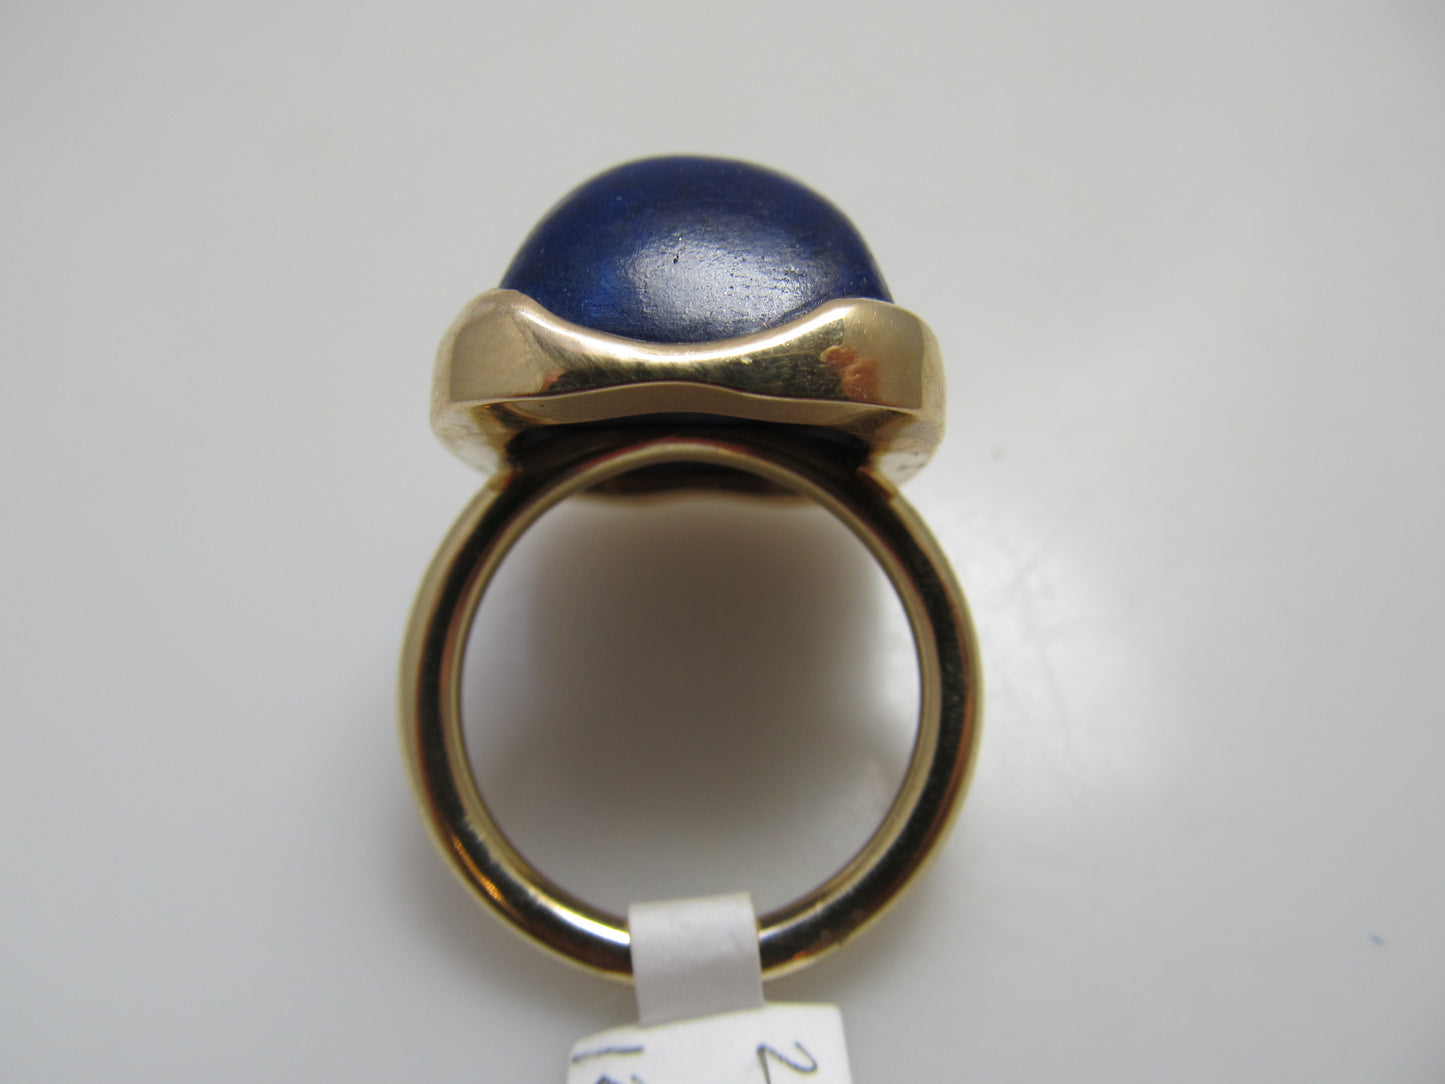 Handmade lapis lazuli ring